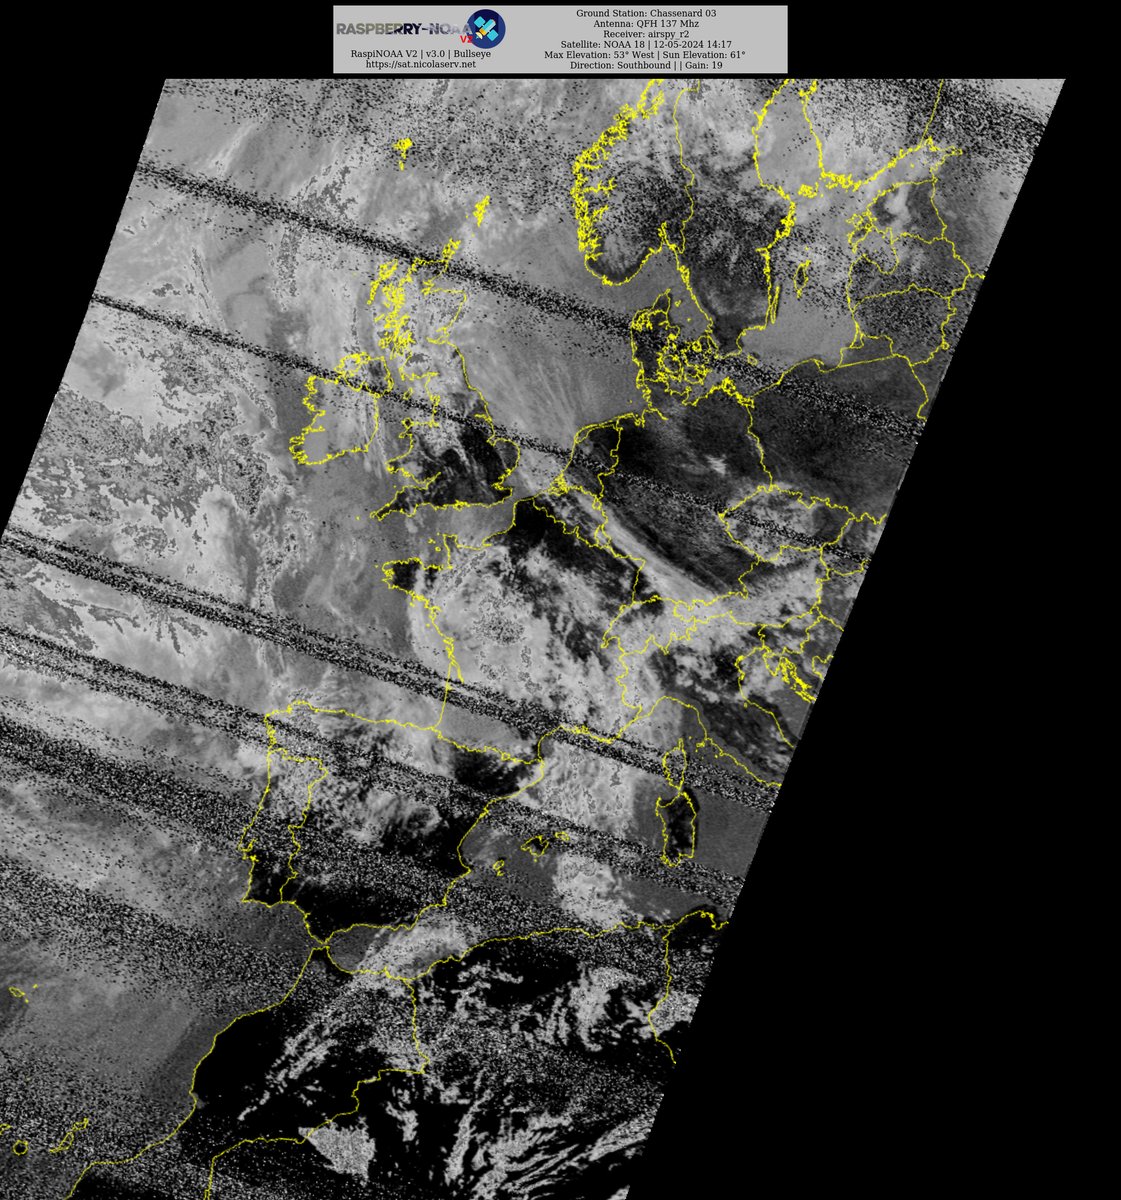 Ground Station: Chassenard 03 NOAA 18 12-05-2024 13:23 CEST  Max Elev: 53° W Sun Elevation: 61° Gain: 19 | Southbound

#NOAA #NOAA15 #NOAA18 #NOAA19 #MeteorM2_3 #MeteorM2_4 #weather #weathersats #APT #LRPT #wxtoimg #MeteorDemod #rtlsdr #gpredict #raspberrypi #RN2 #ISS